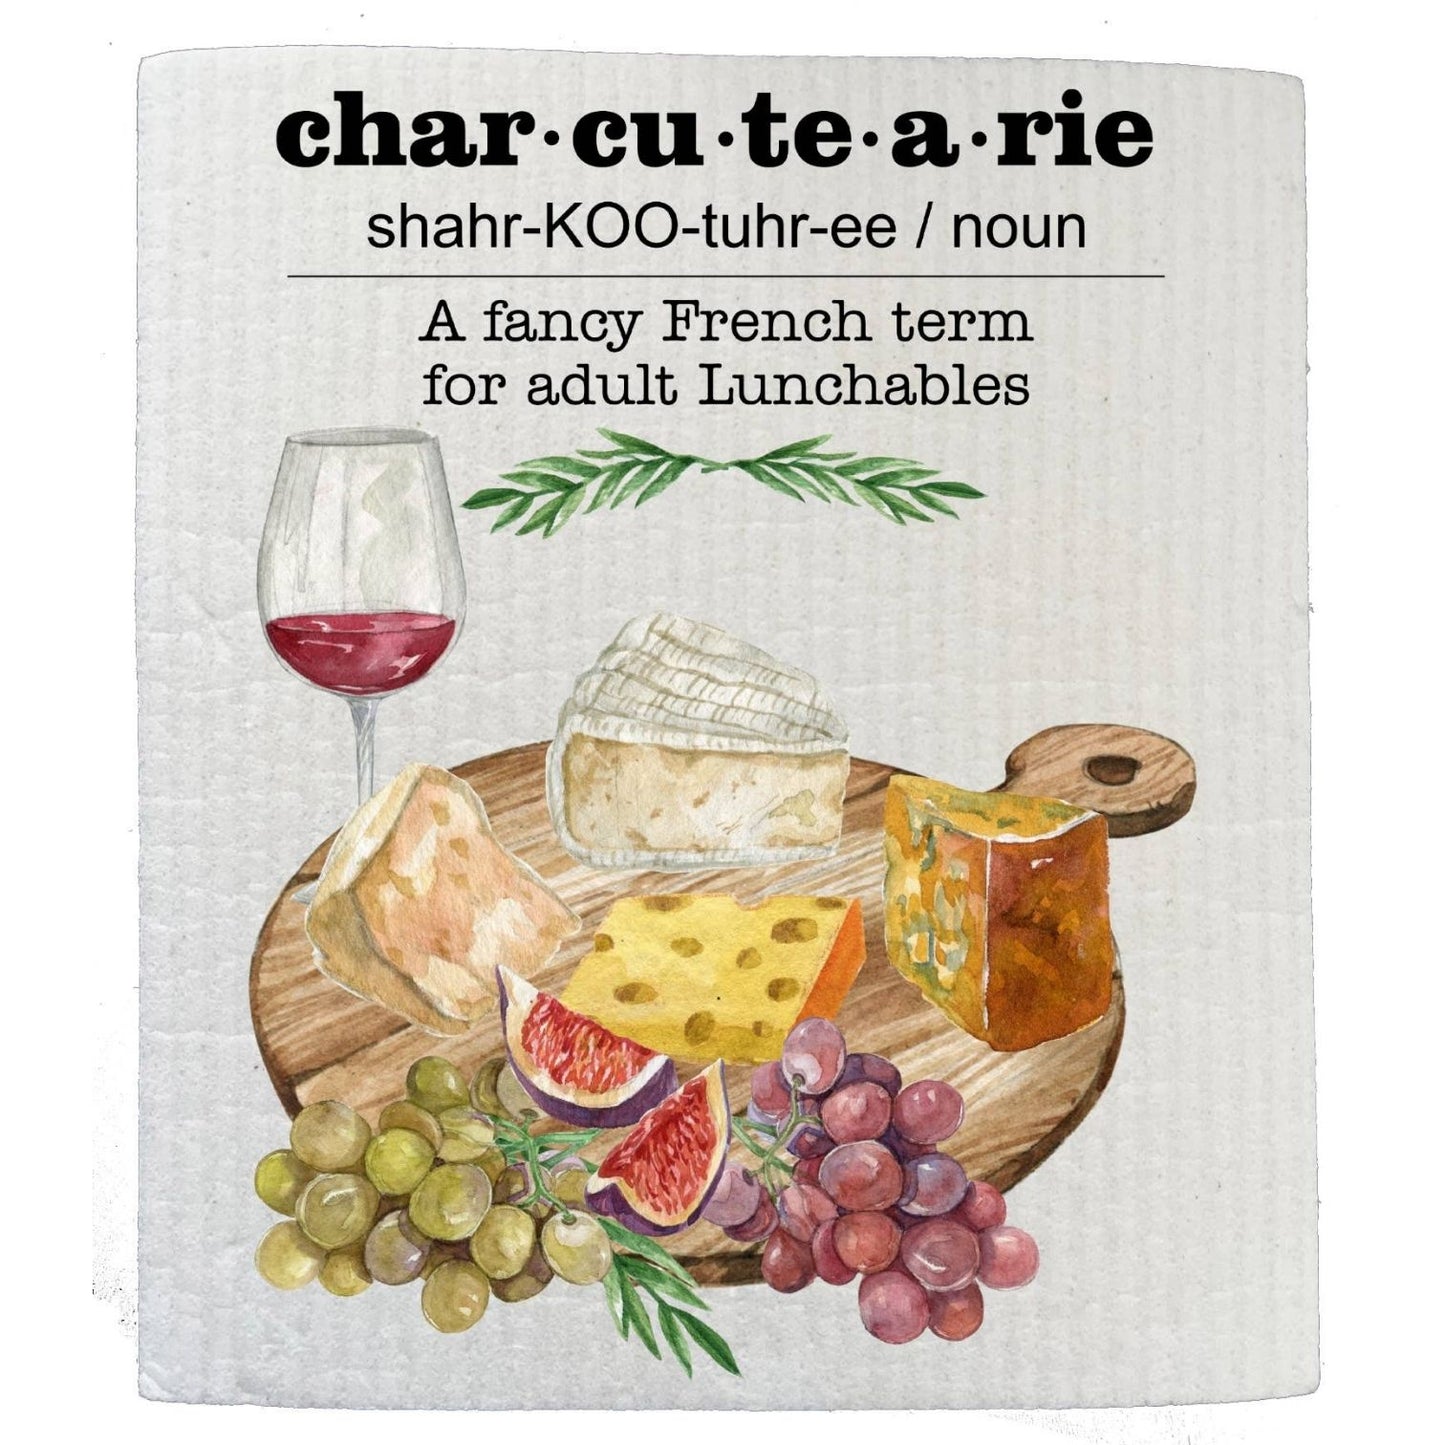 Charcutearie Board Cheese Wine Kitchen SWEDISH DISH CLOTHS